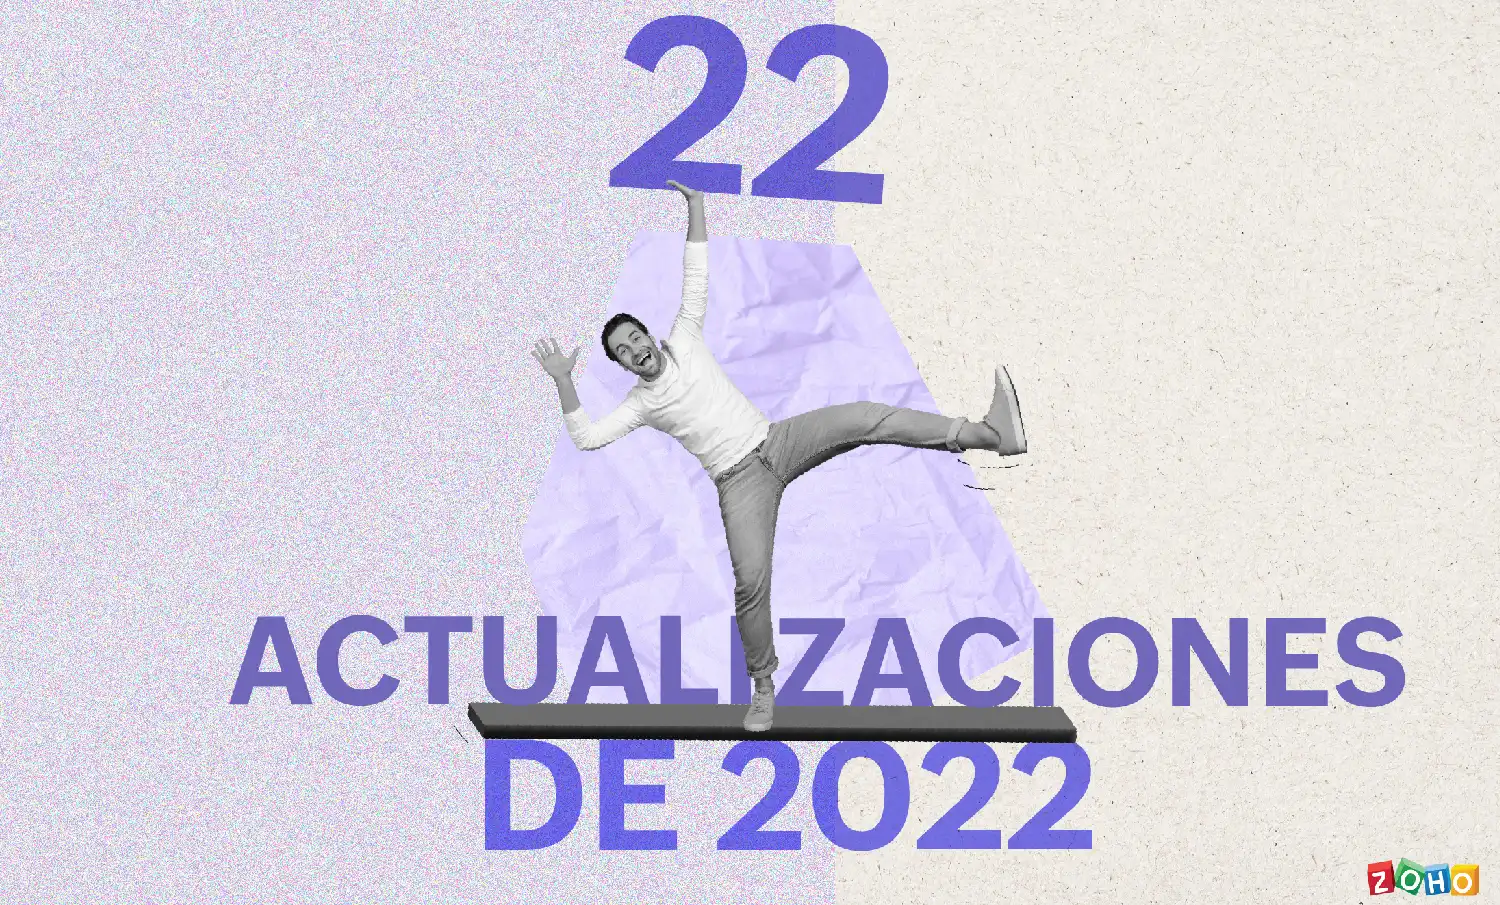 22 actualizaciones de 2022